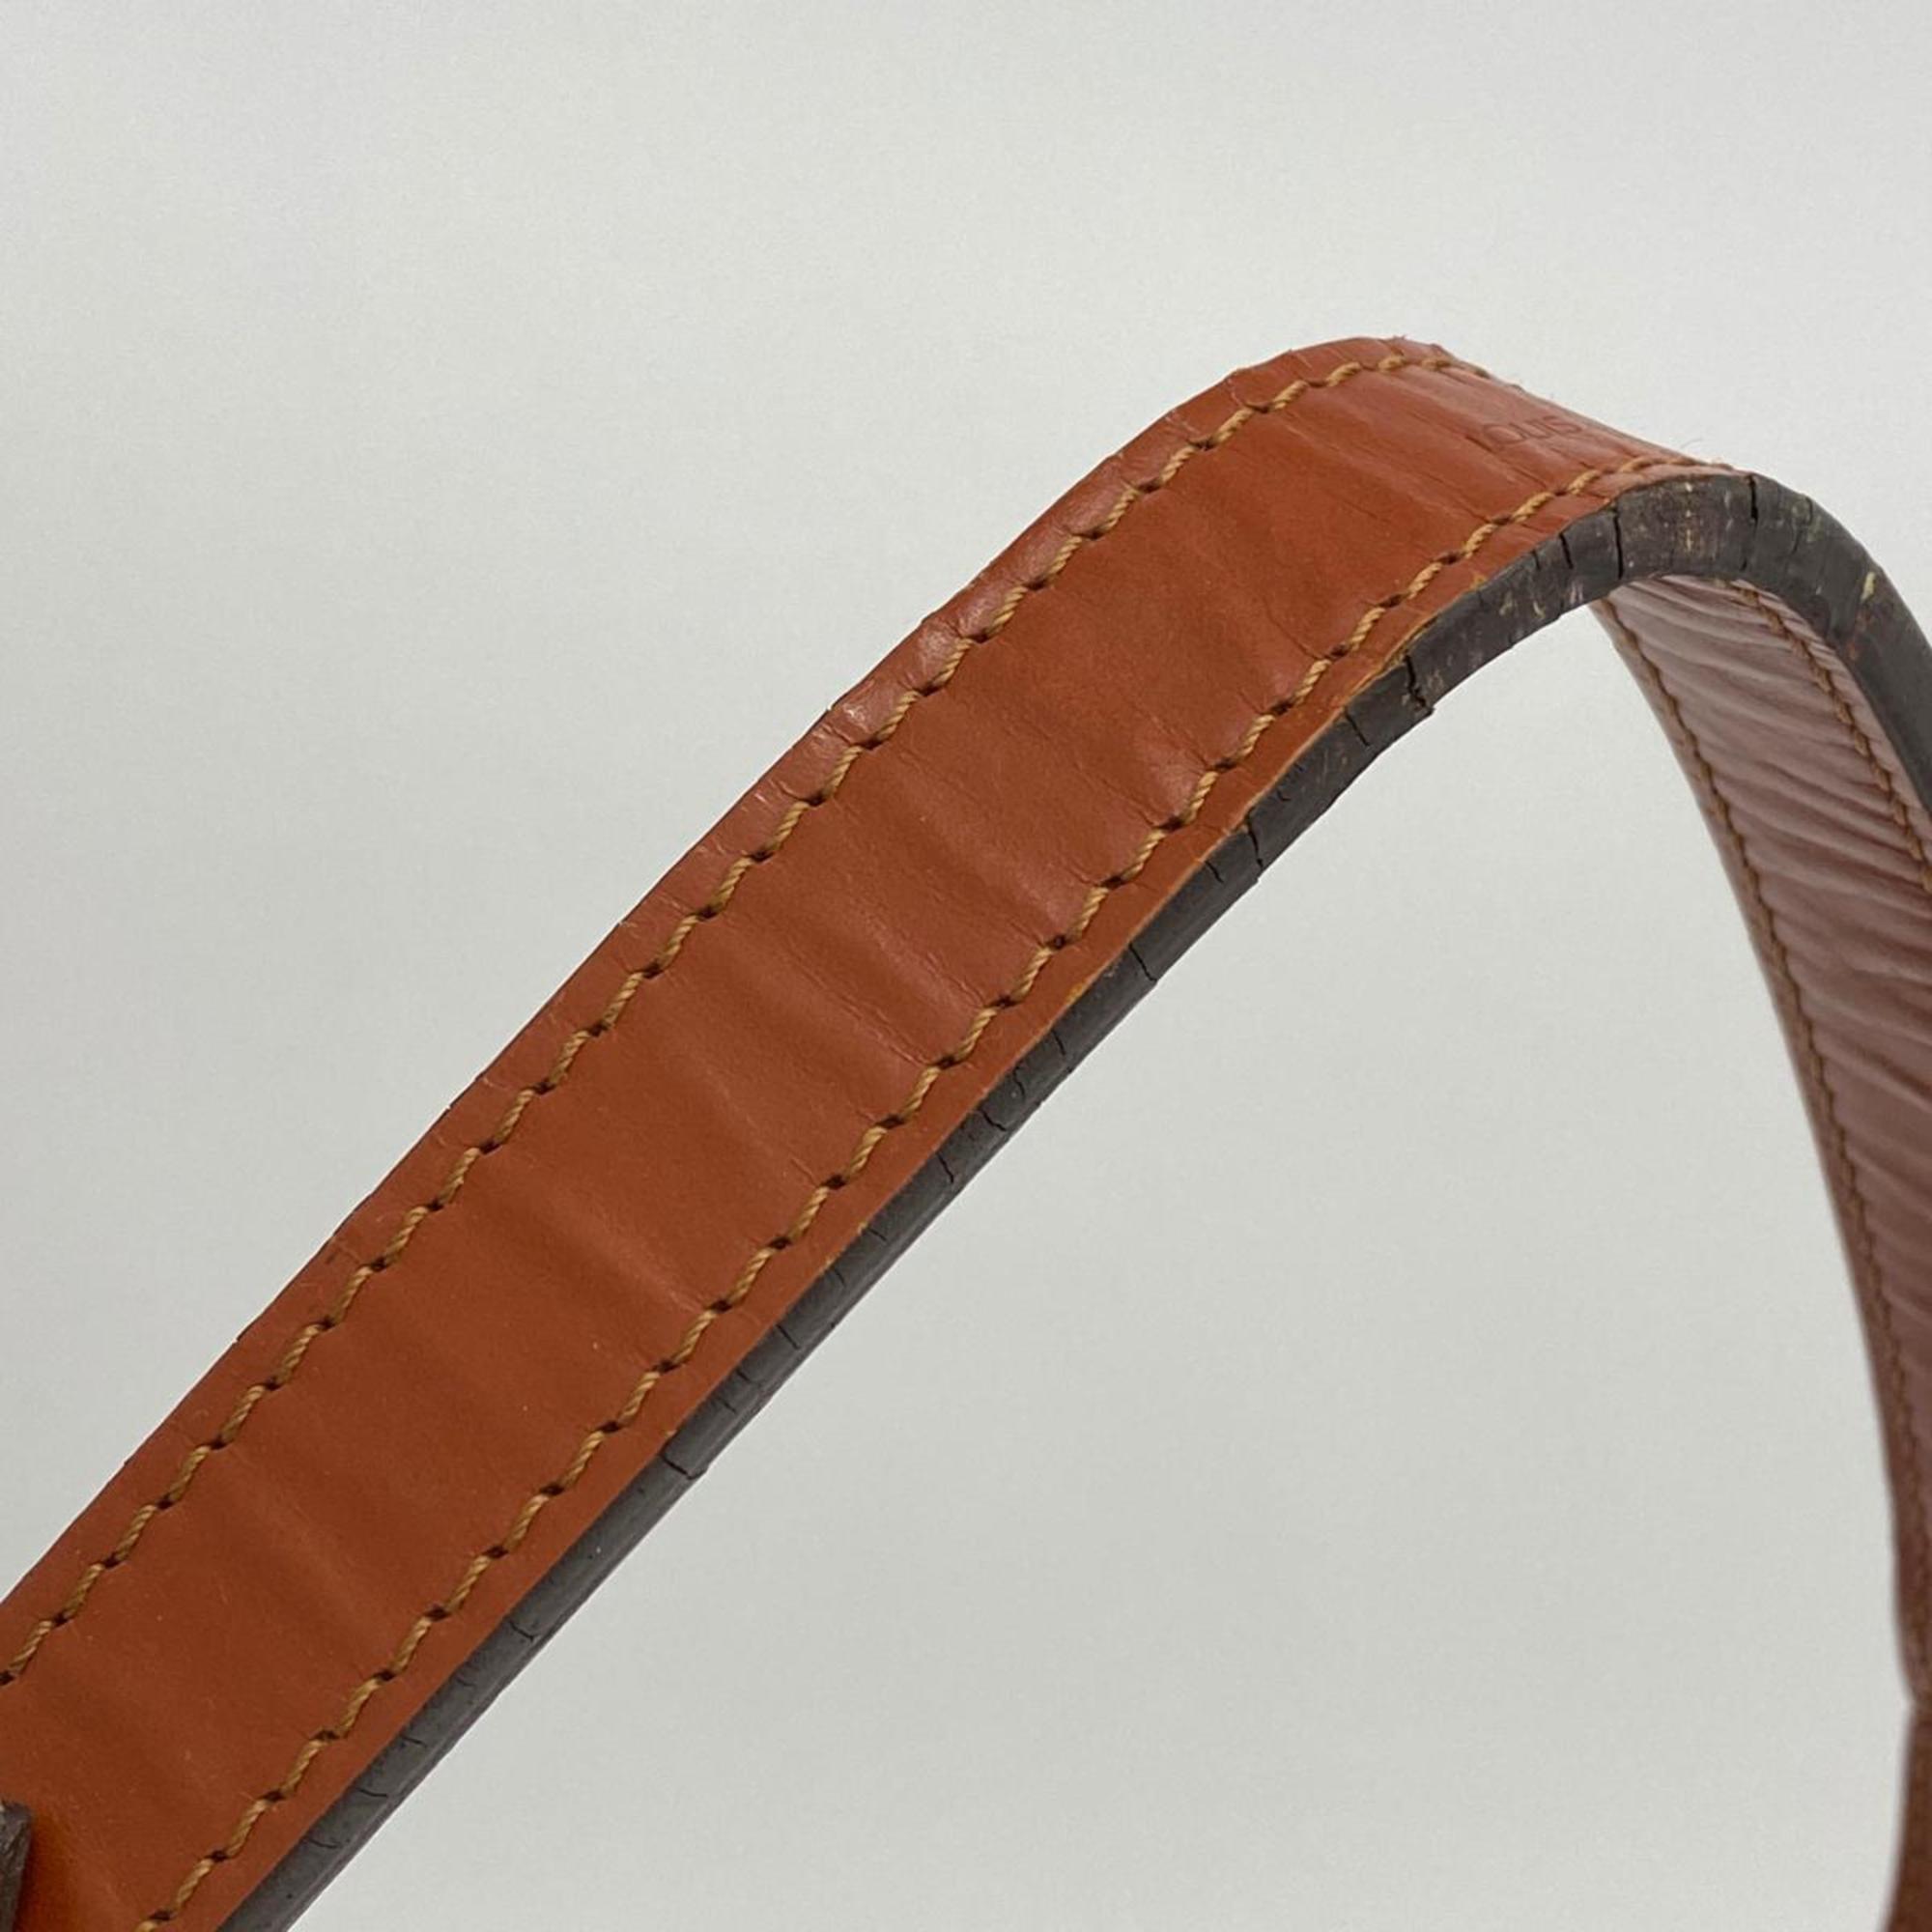 Louis Vuitton Shoulder Bag Epi Petit Noe M44103 Kenya Brown Ladies